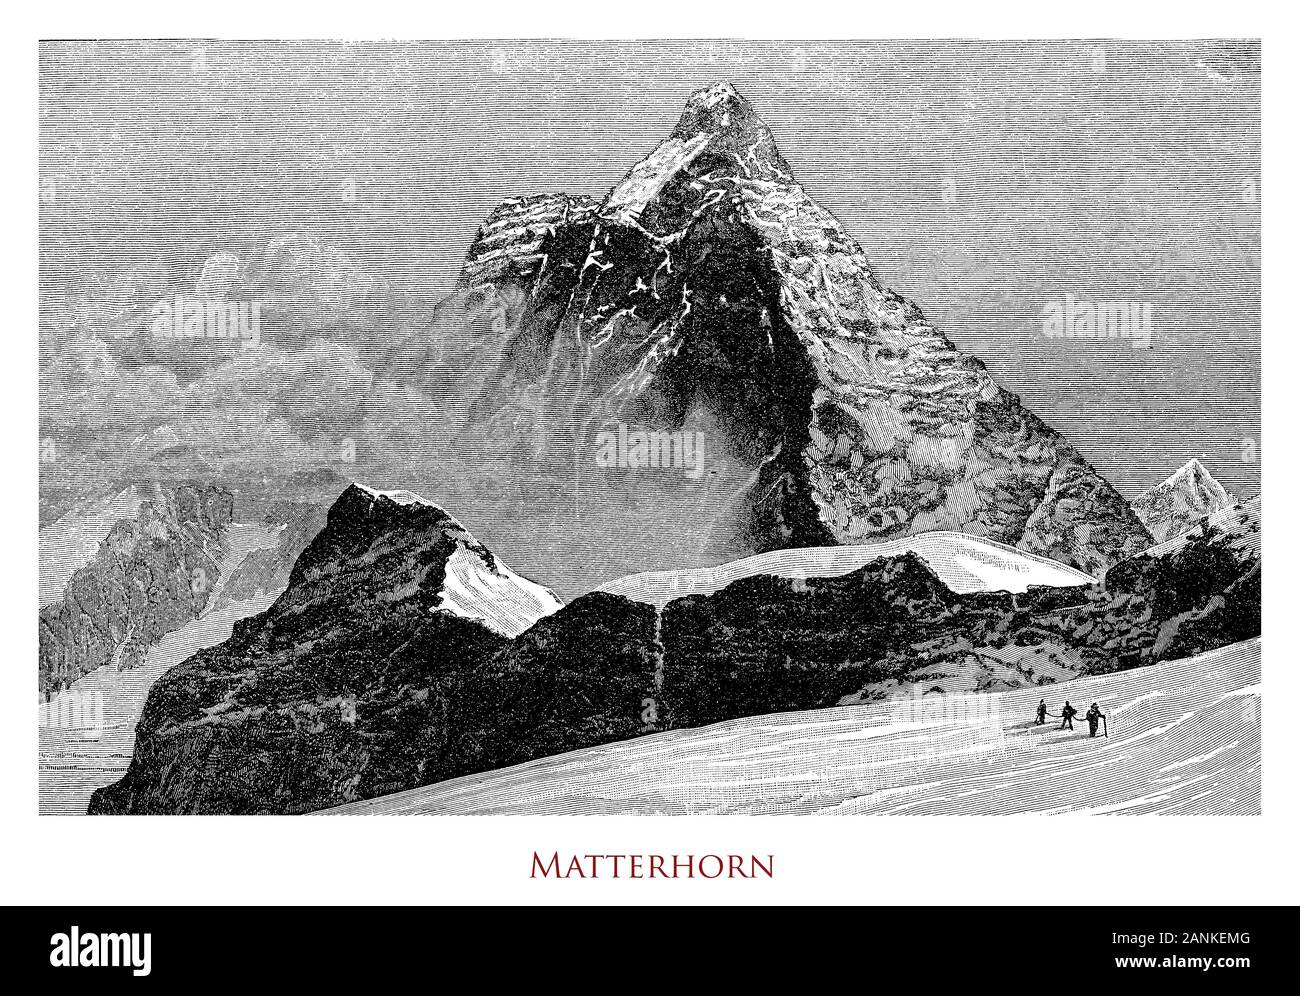 Vintage Abbildung: Matterhorn oder cervino zwischen der Schweiz und Italien, isolierte Berg mit einem steilen Pyramidenform, einer der höchsten Gipfel der Alpen Stockfoto